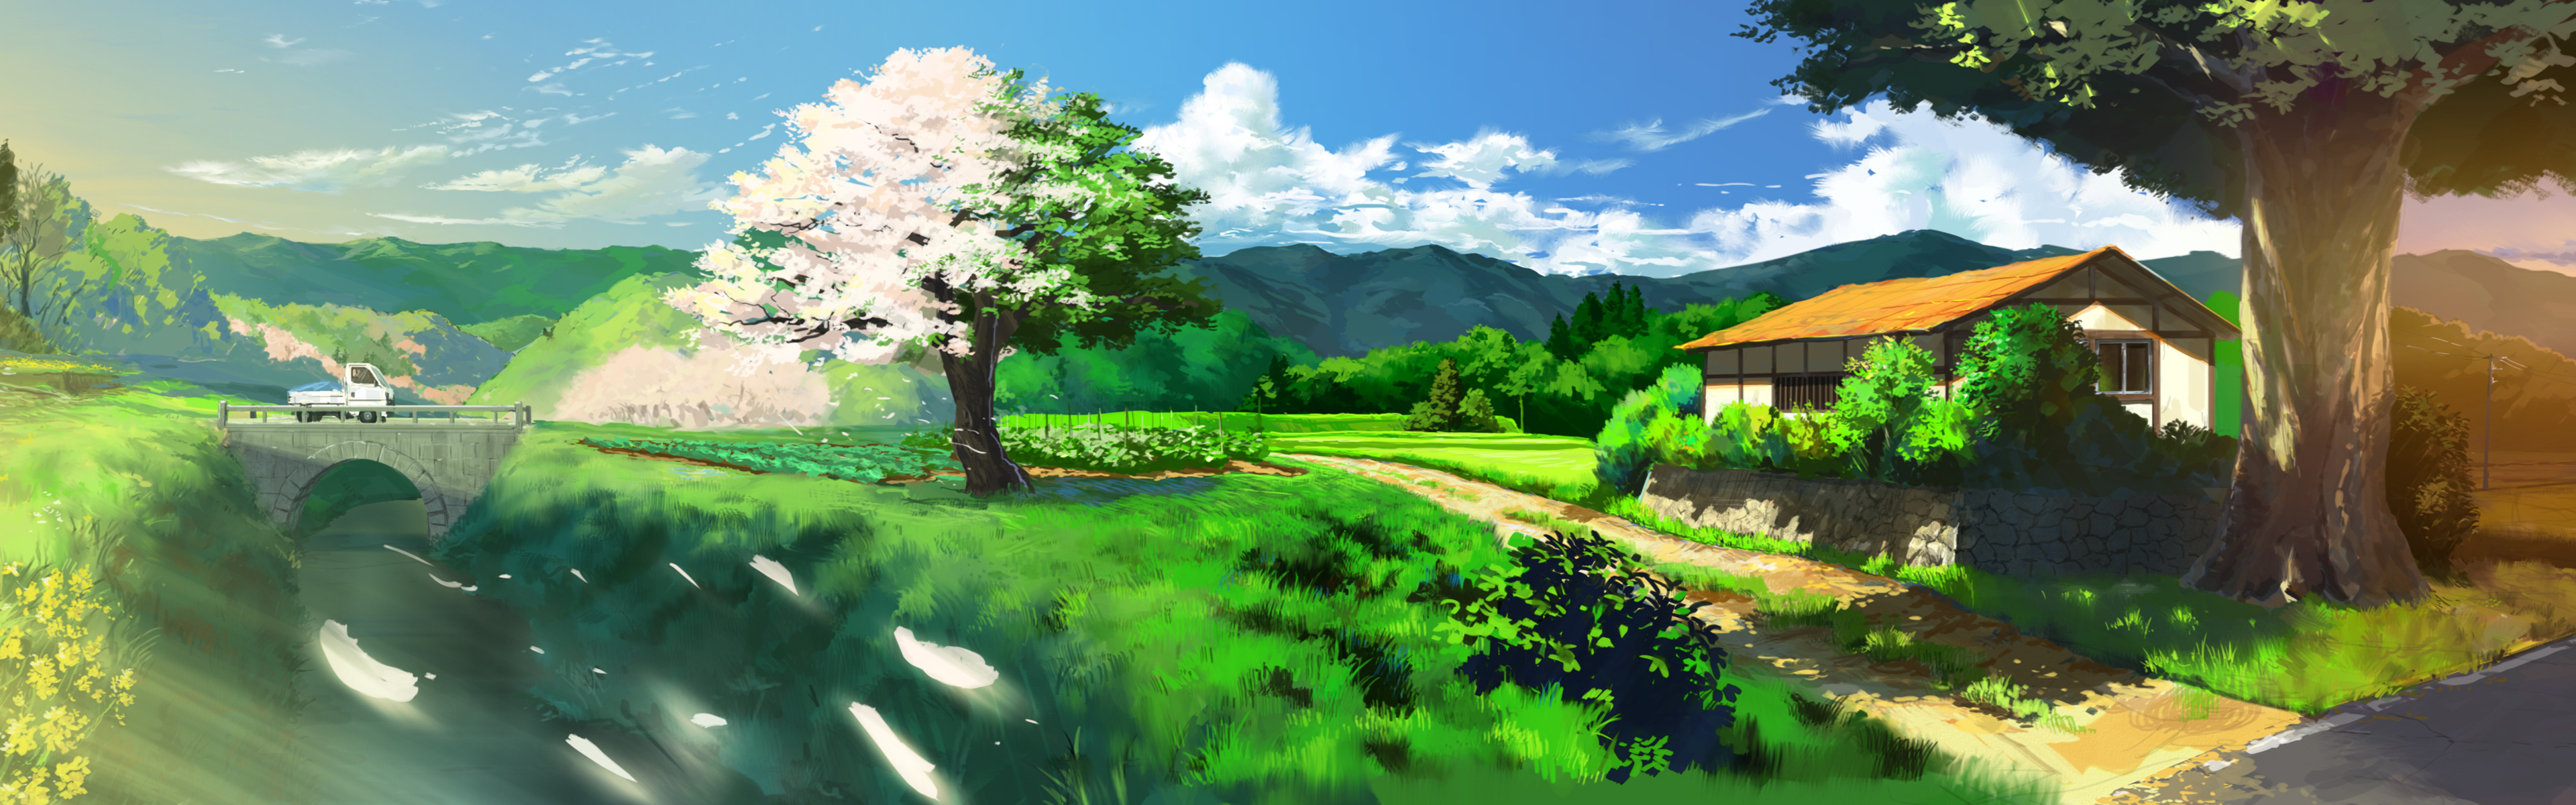 animelandscape.jpg